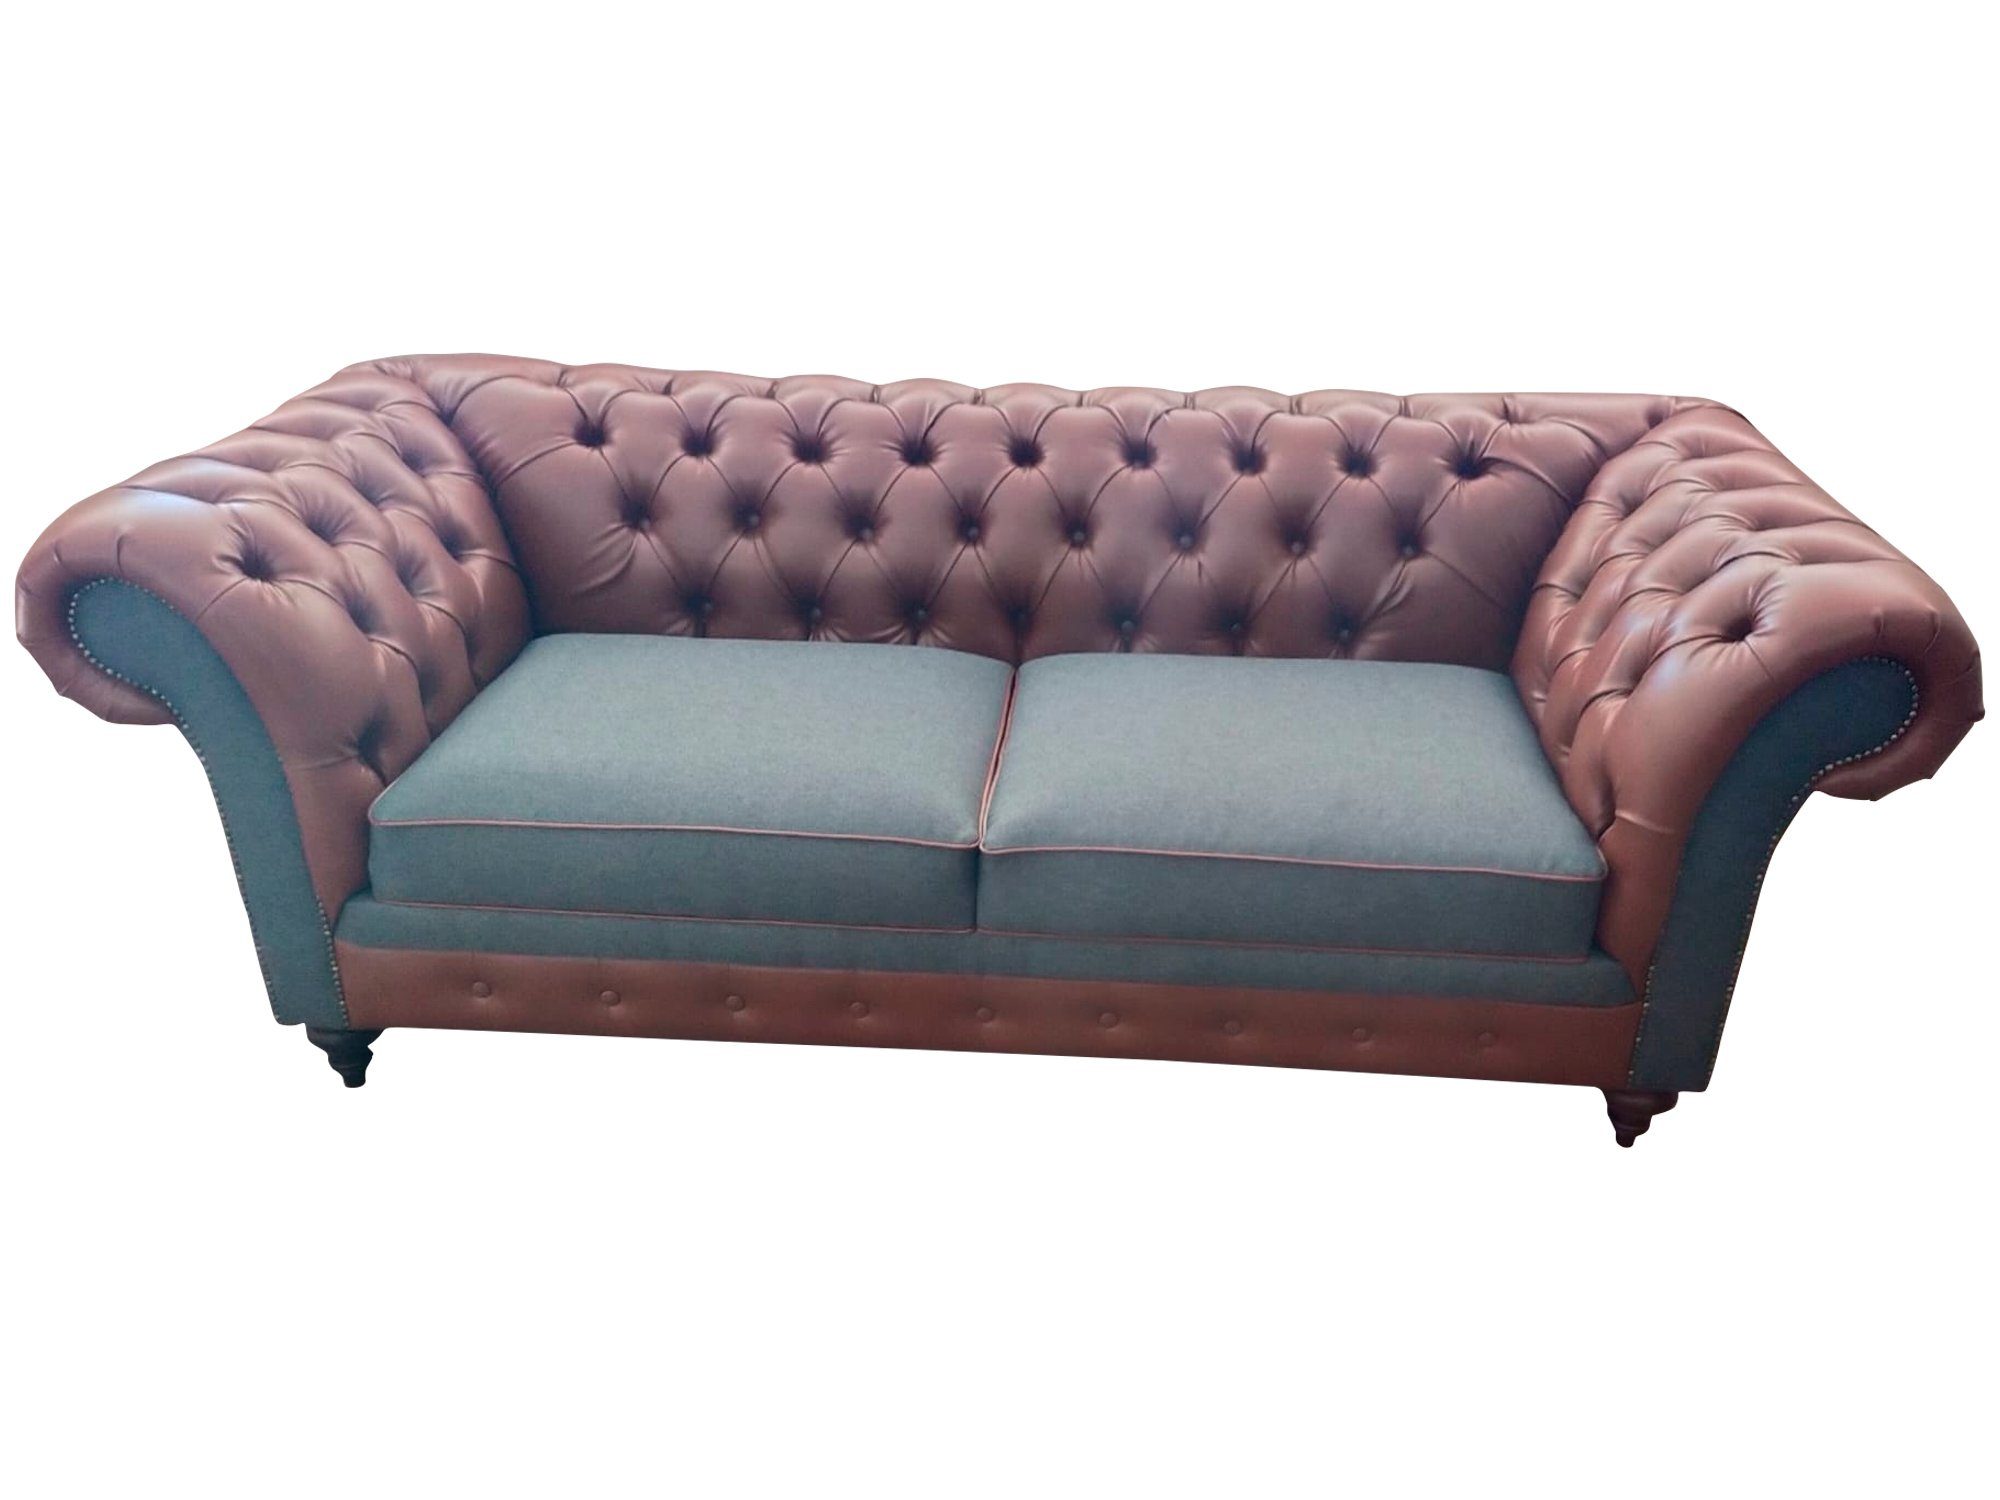 JVmoebel Sofa, Sofa 3 Sitzer Couch design Chesterfield Couchen Dreisitzer Sofas Neu